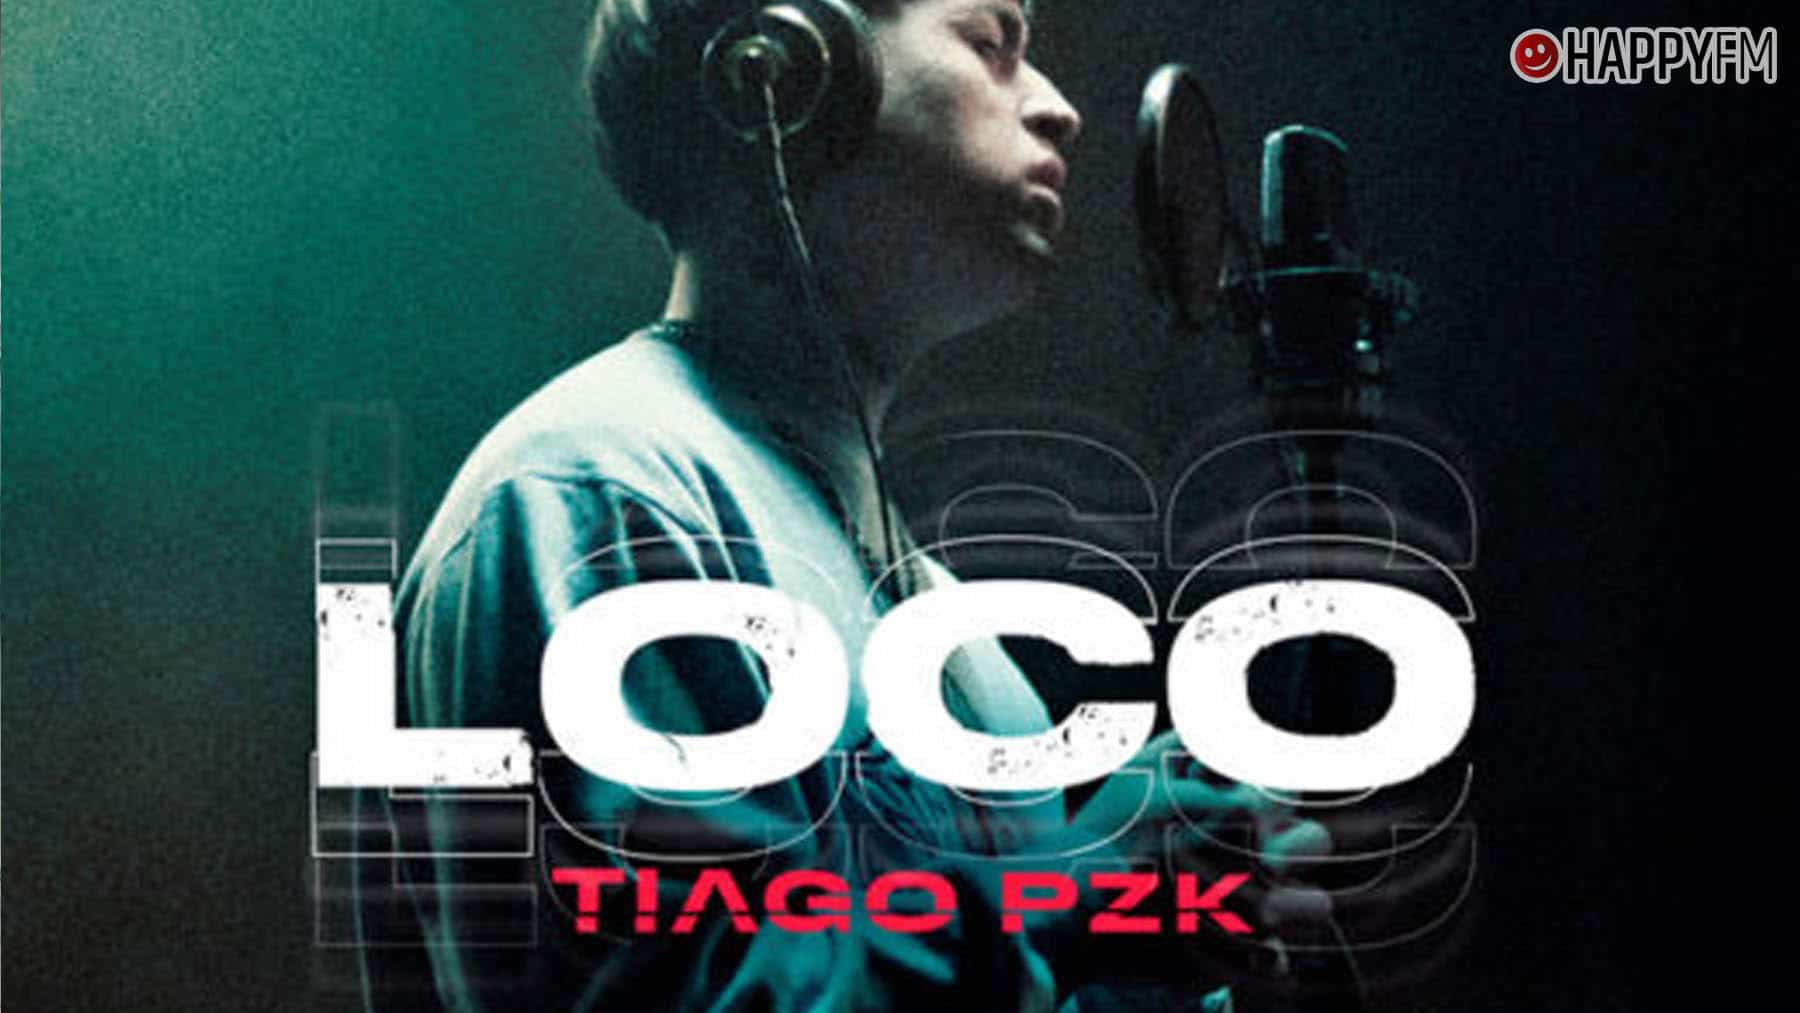 ‘Loco’, de Tiago PZK: letra y vídeo